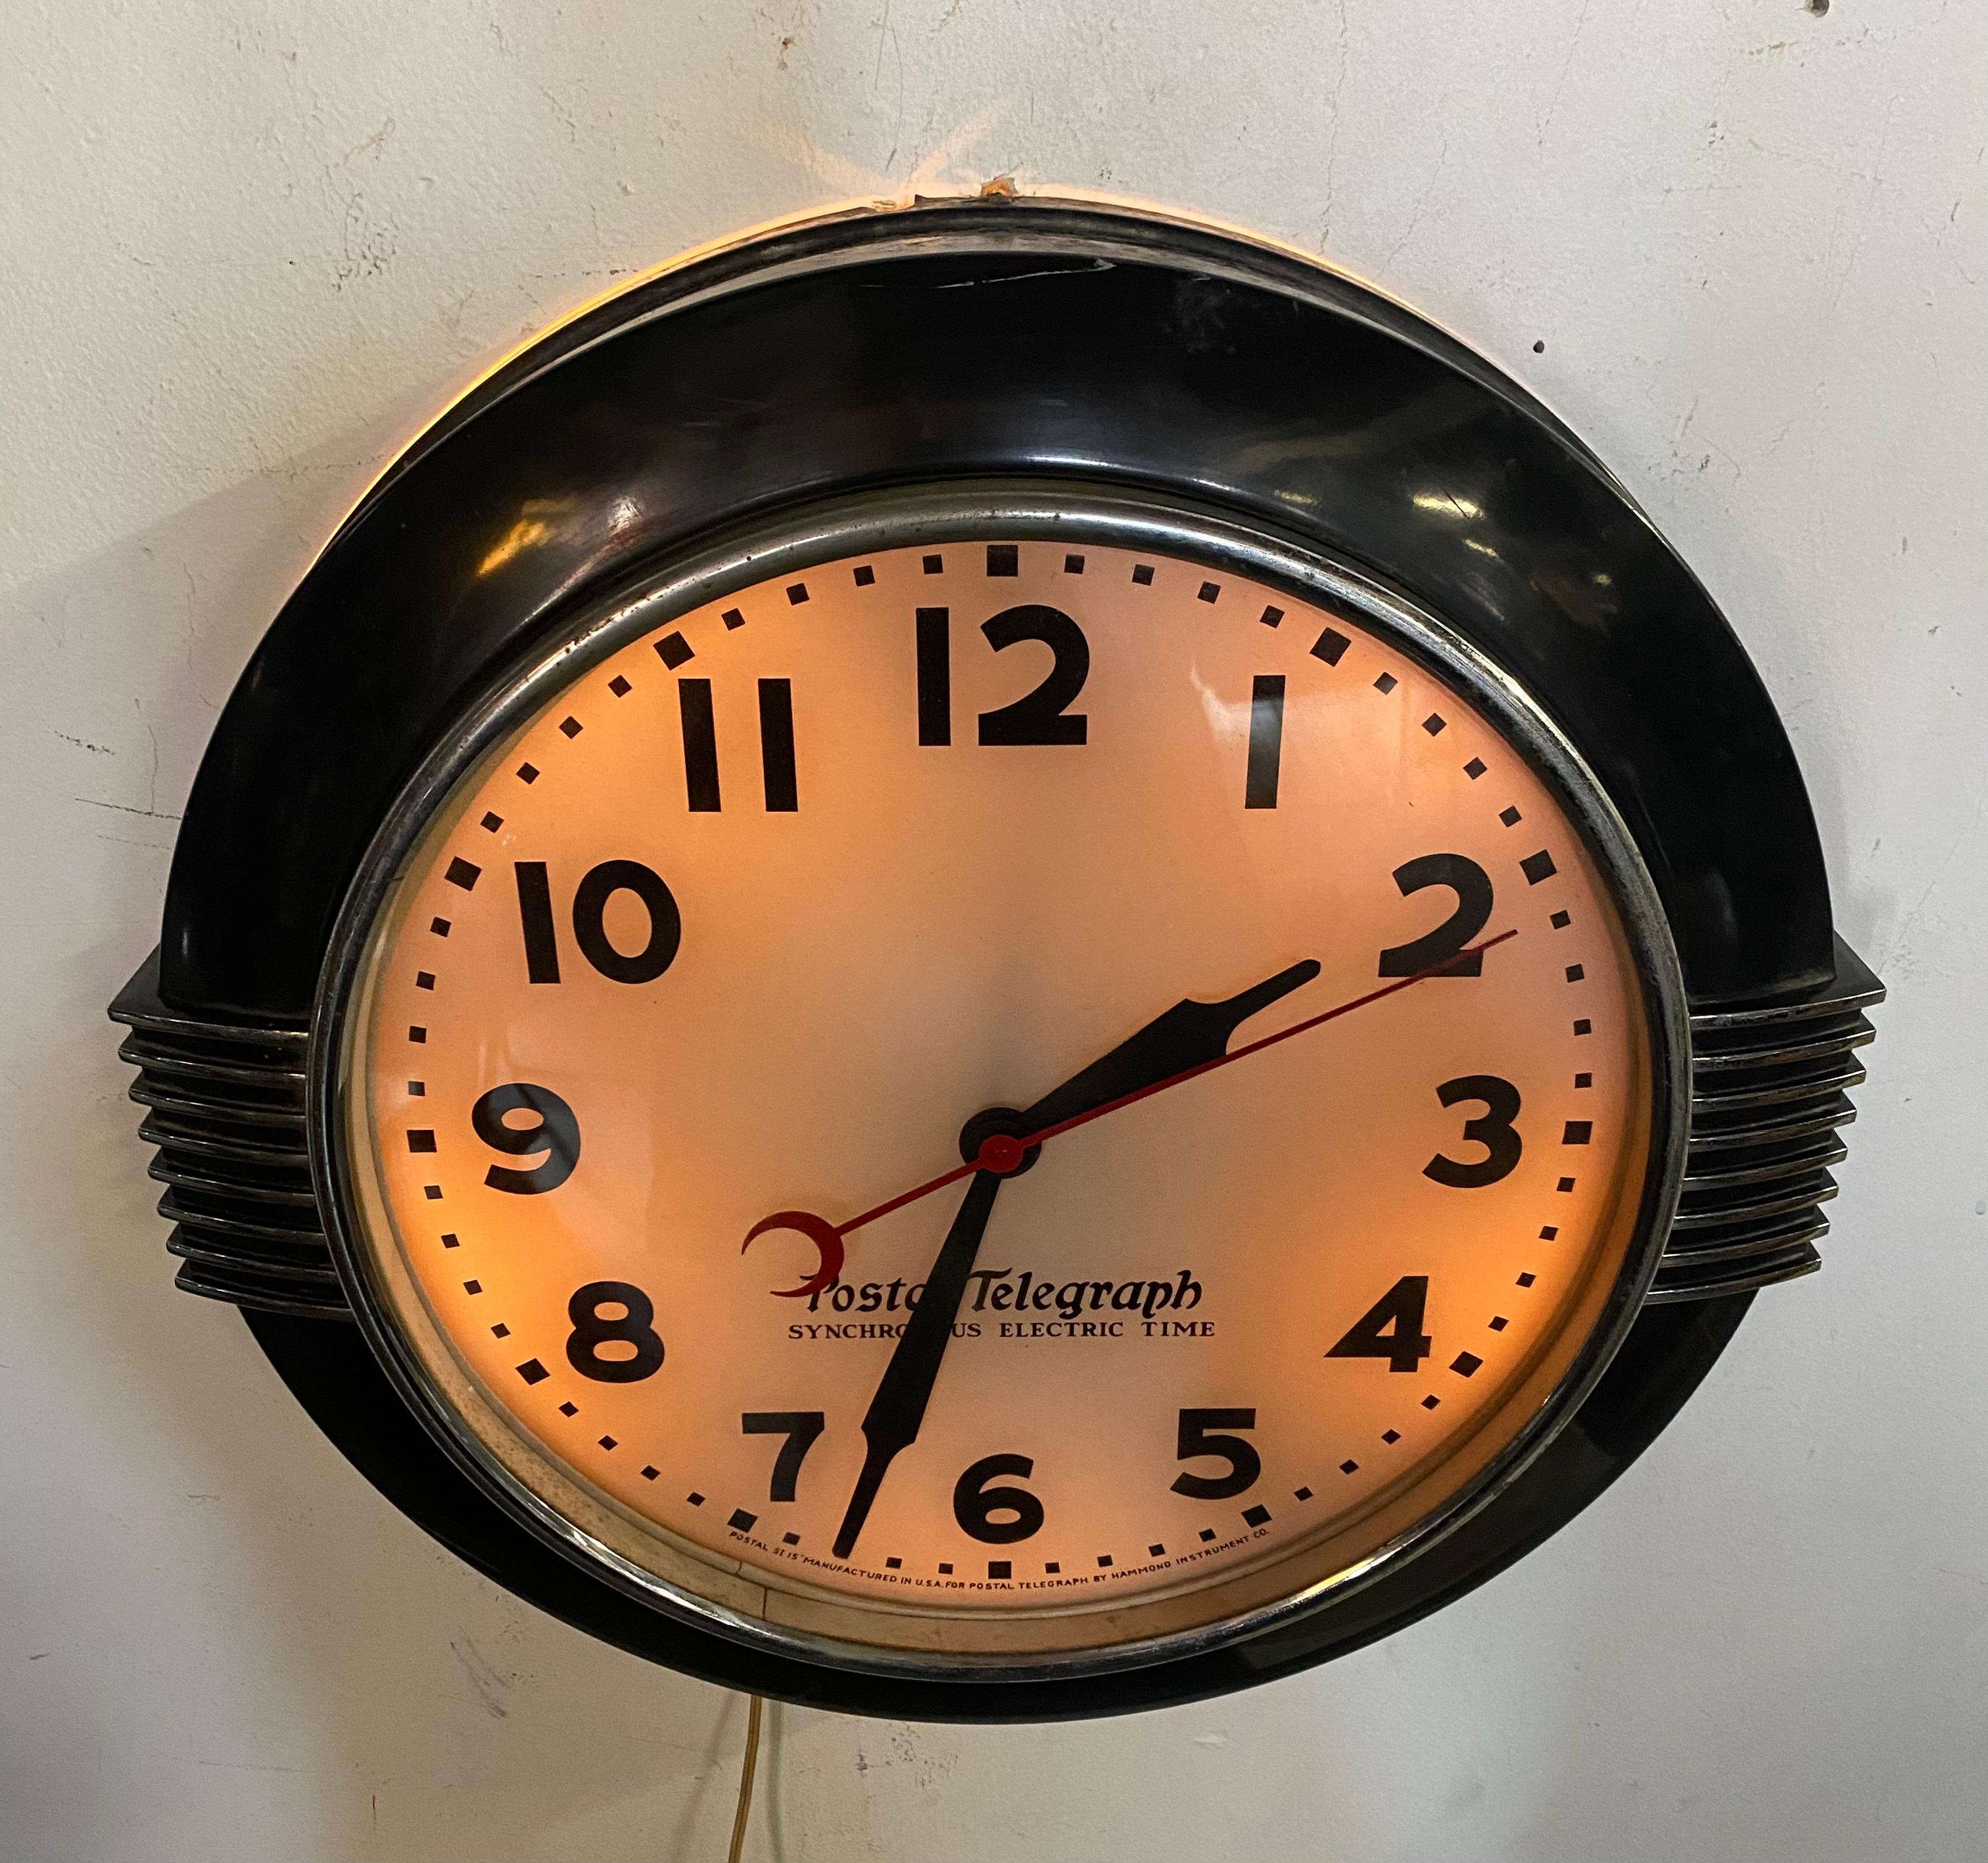 postal telegraph clock